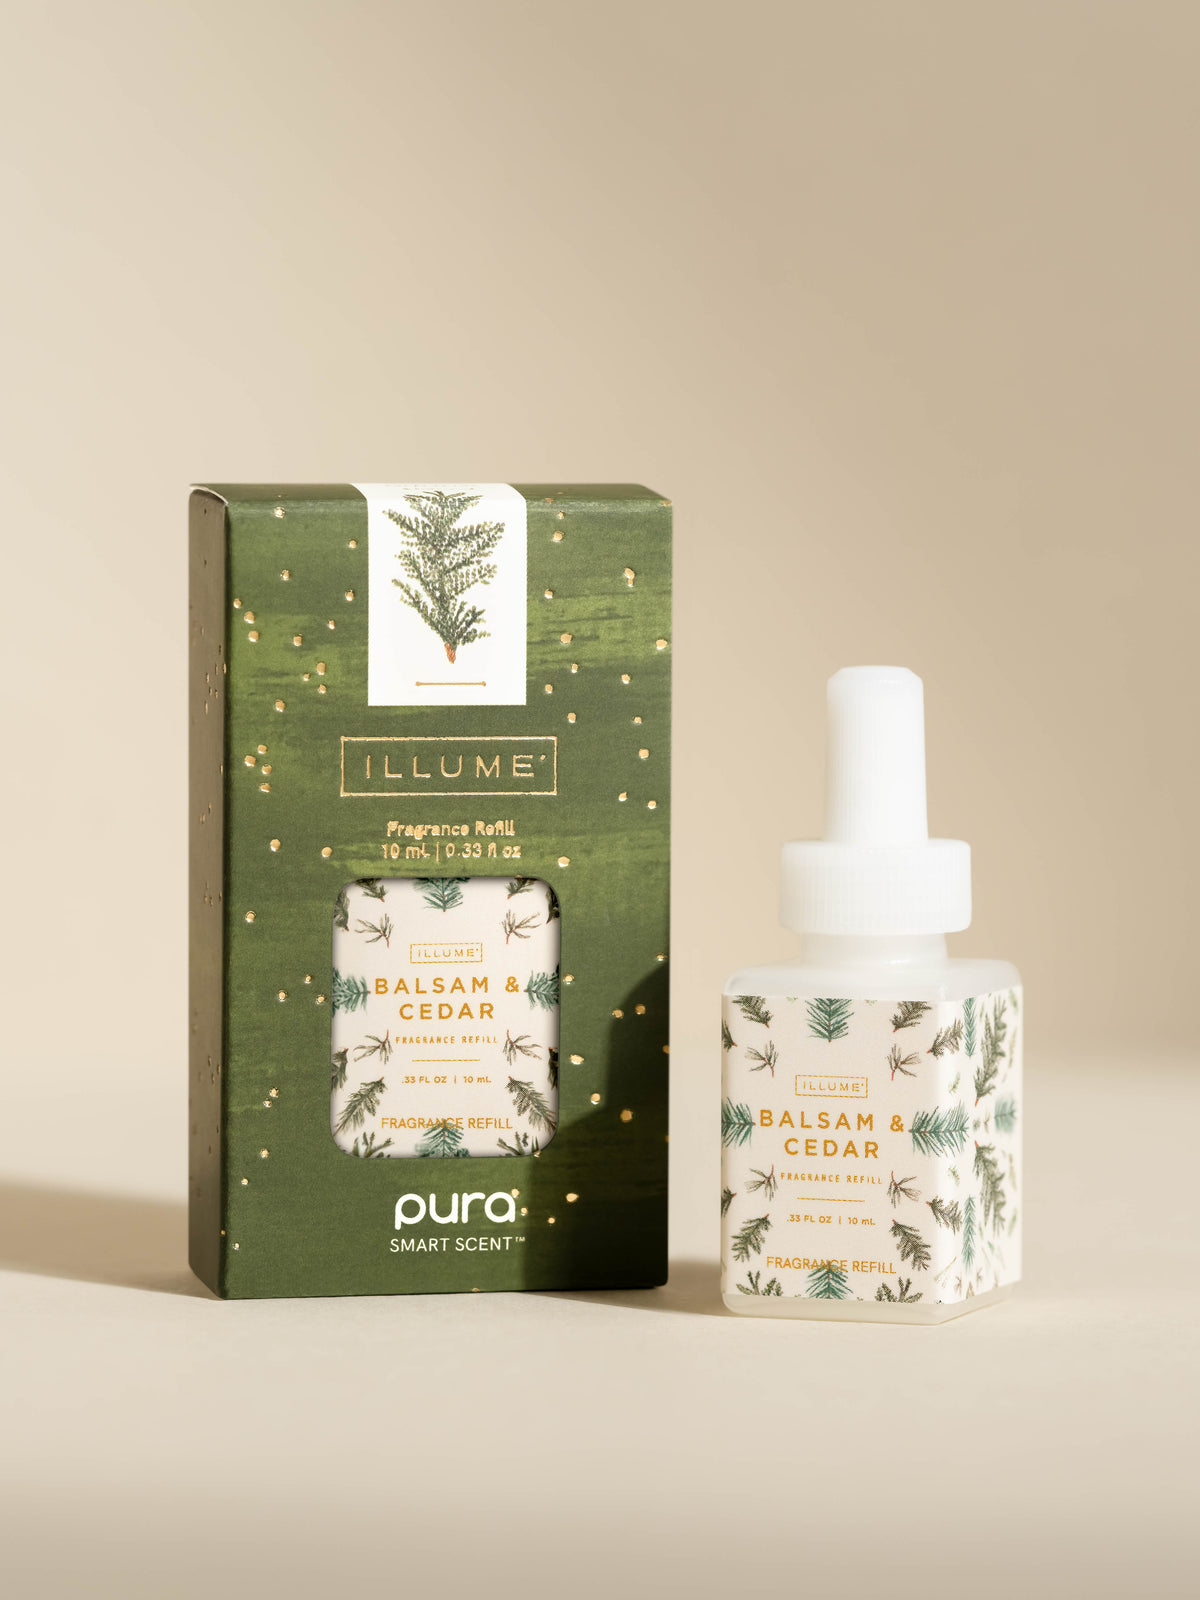 Balsam & Cedar Pura Smart Vial Fragrance Refill by Illume